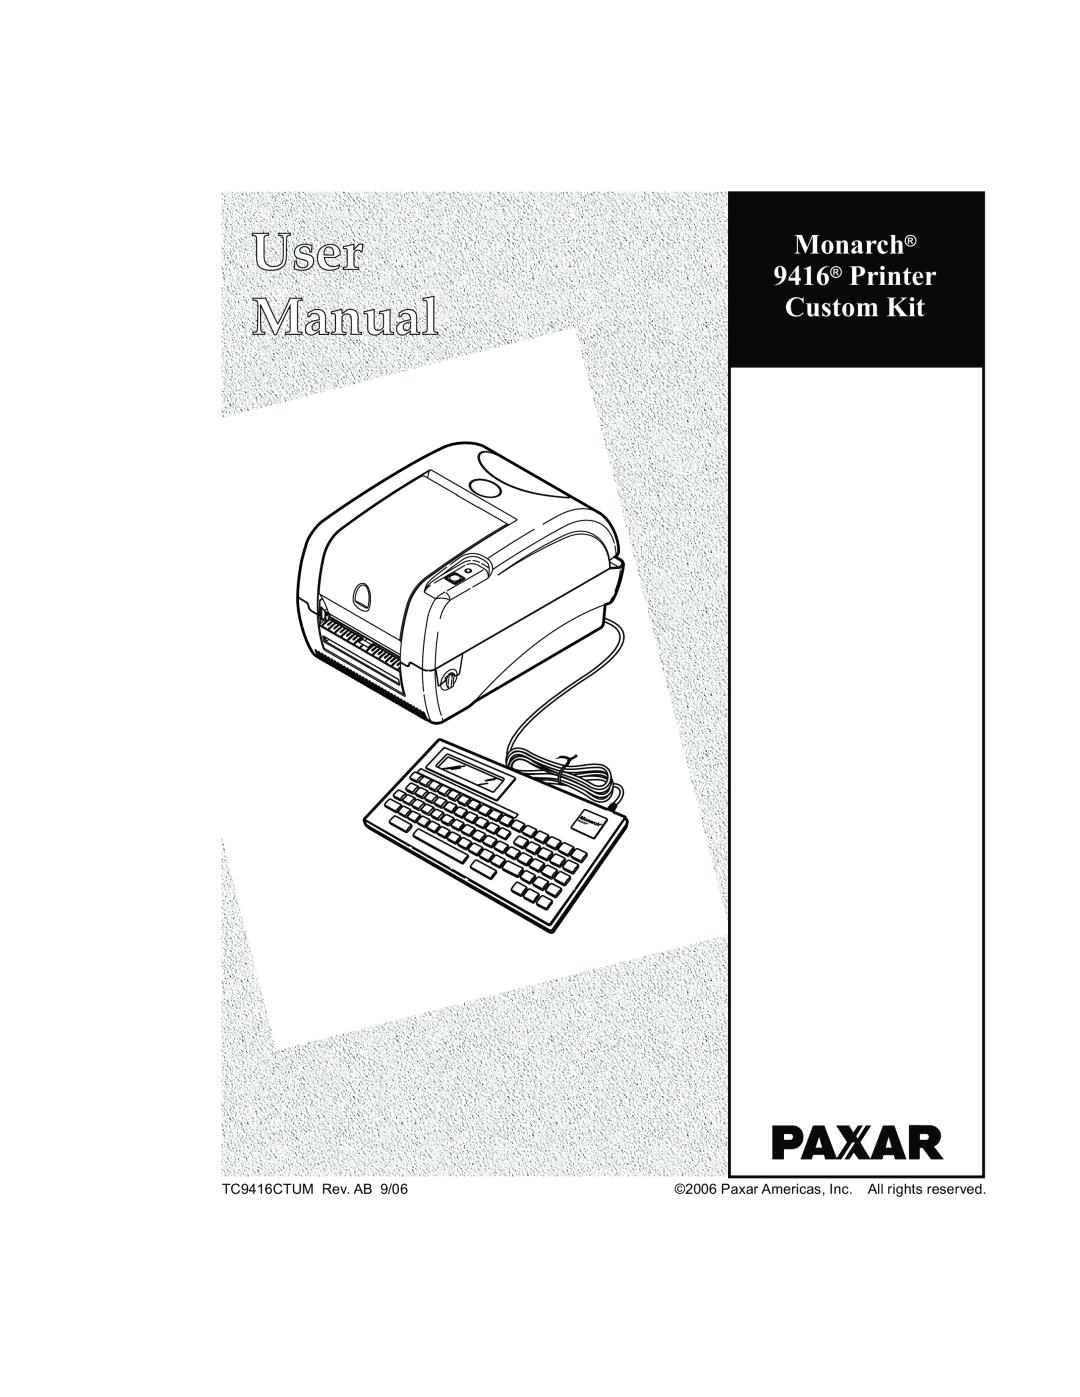 Paxar manual User Manual, Monarch 9416 Printer Custom Kit, TC9416CTUM Rev. AB 9/06 